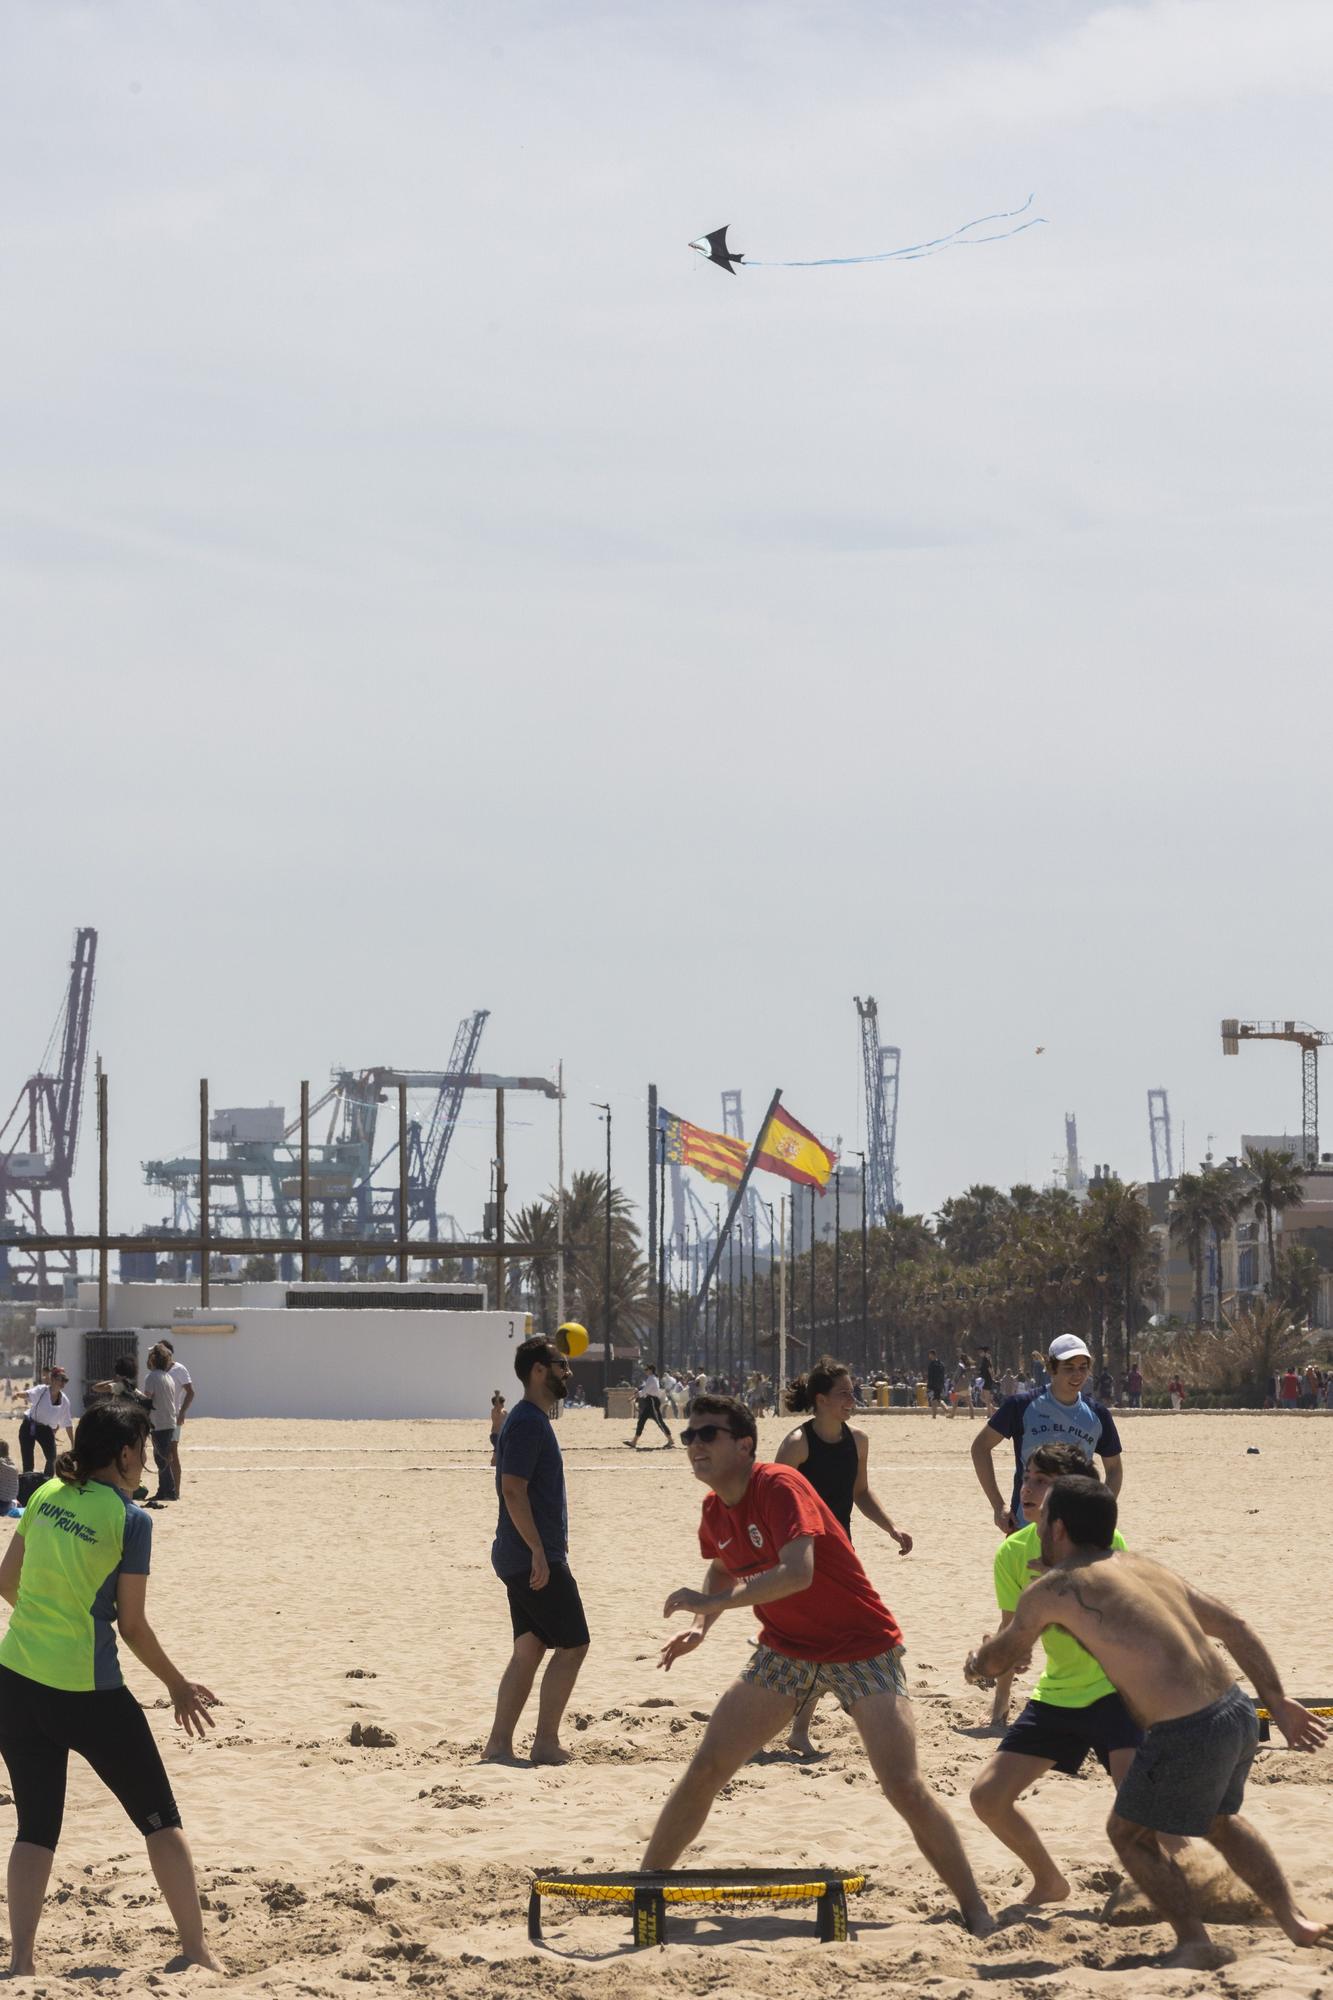 Cometas y voleibol, un Lunes de Pascua en las playas valencianas